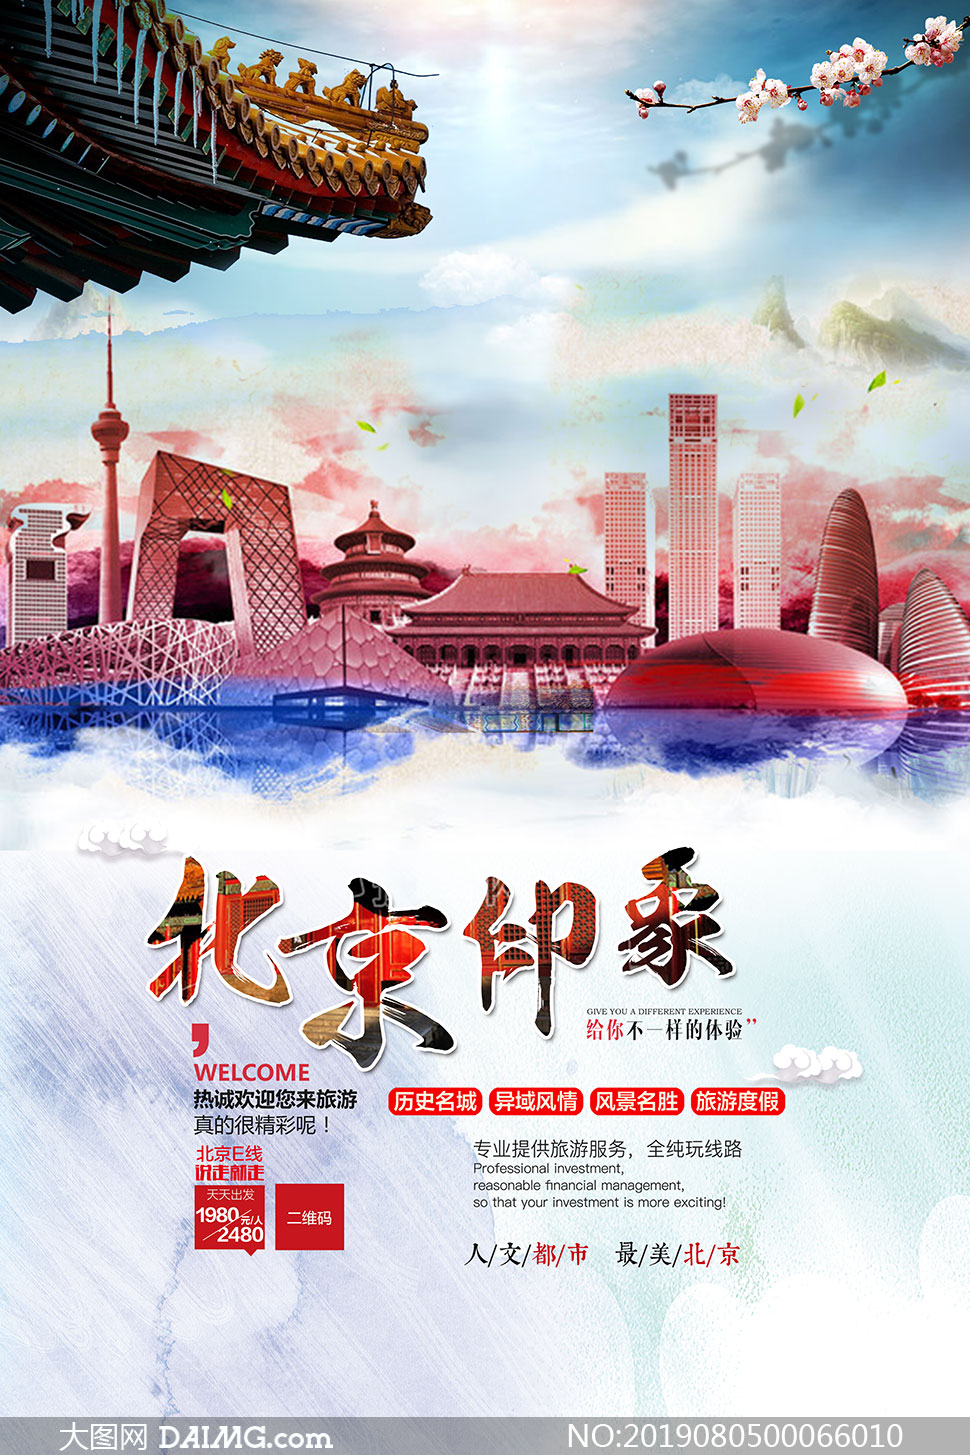 北京印象旅游宣传海报设计psd素材